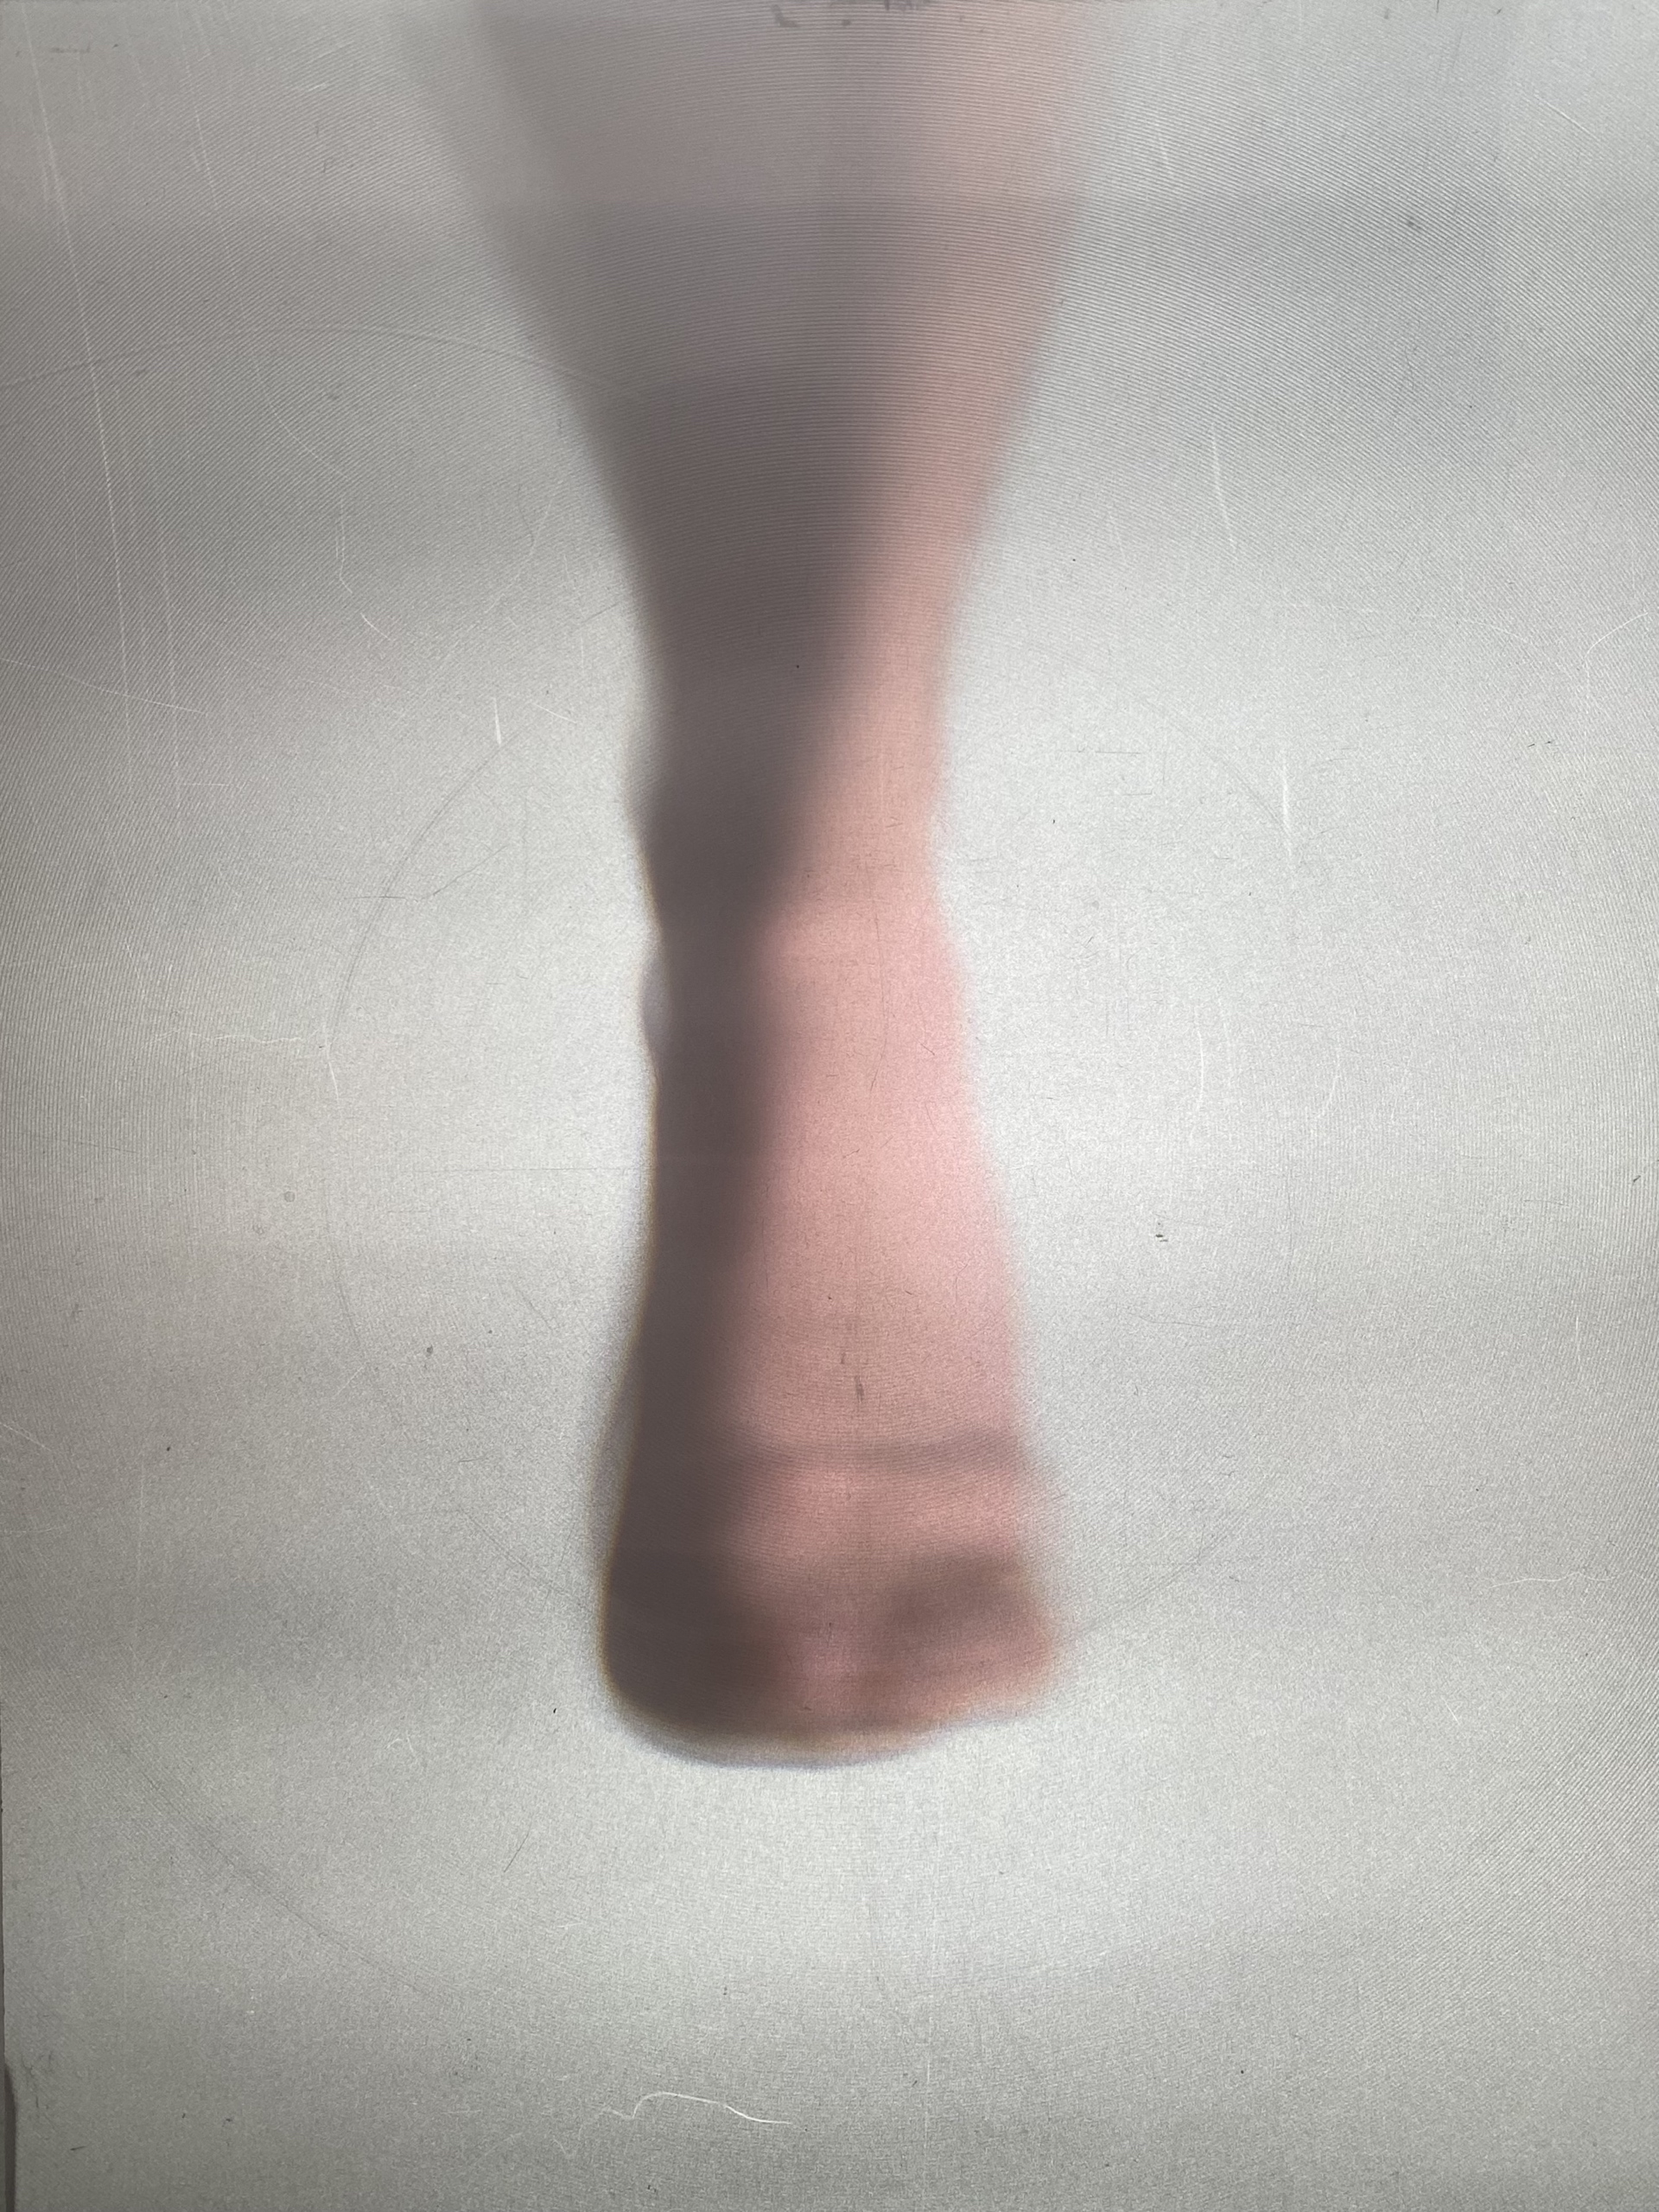 Bartosz MilkaFotografie: dłoni, stopy oraz portret mężczyzny, utrzymane w konwencji niskiej jakości: nieostre, zniekształcone, o niskim kontraście, płowej kolorystyce.